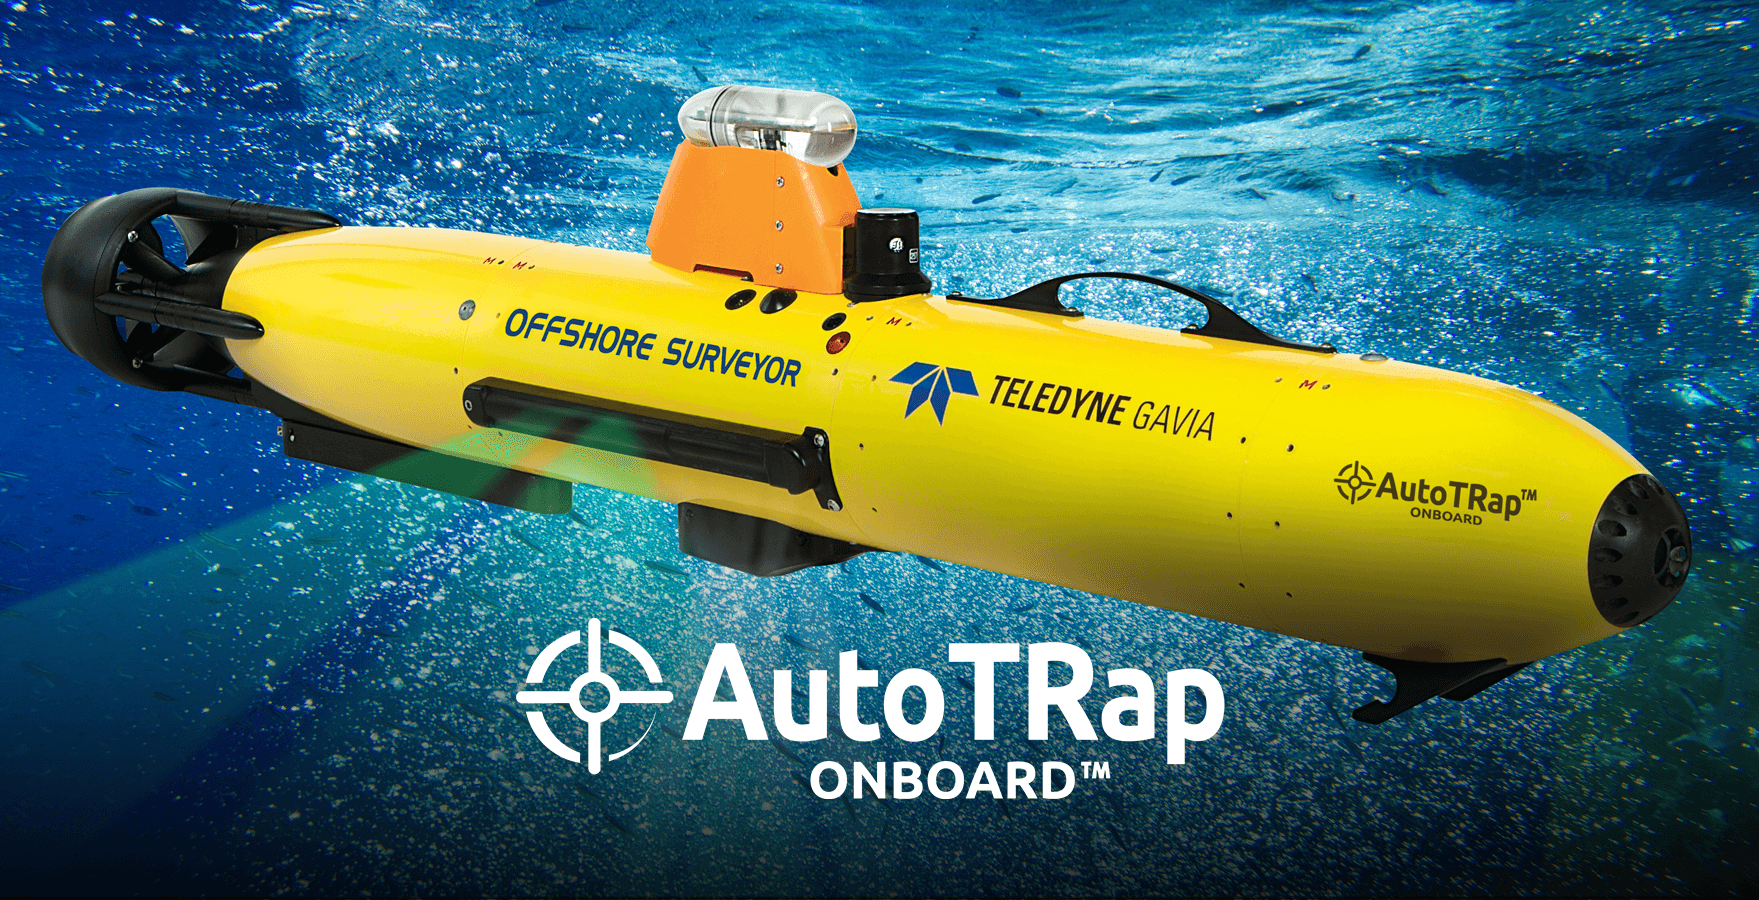 AutoTrap Onboard logo